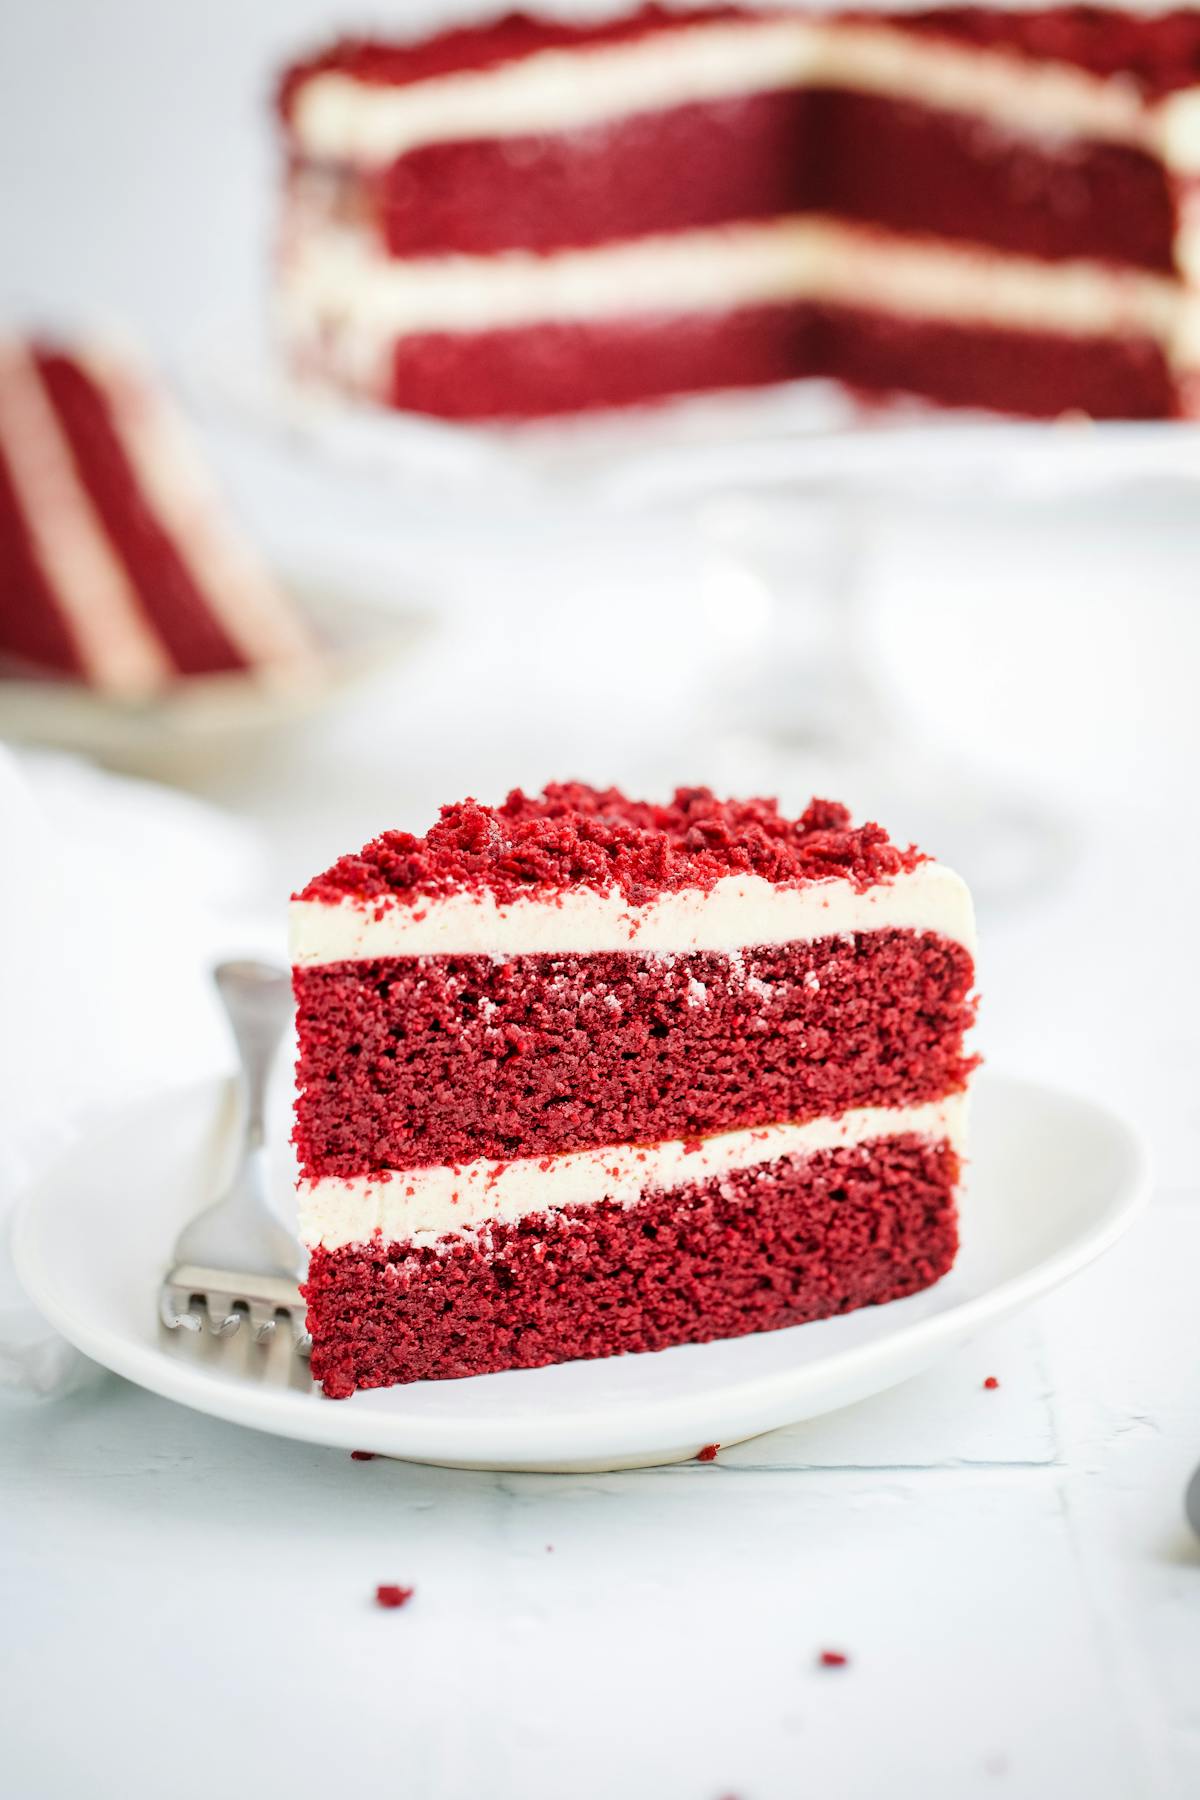 Keto red velvet cake